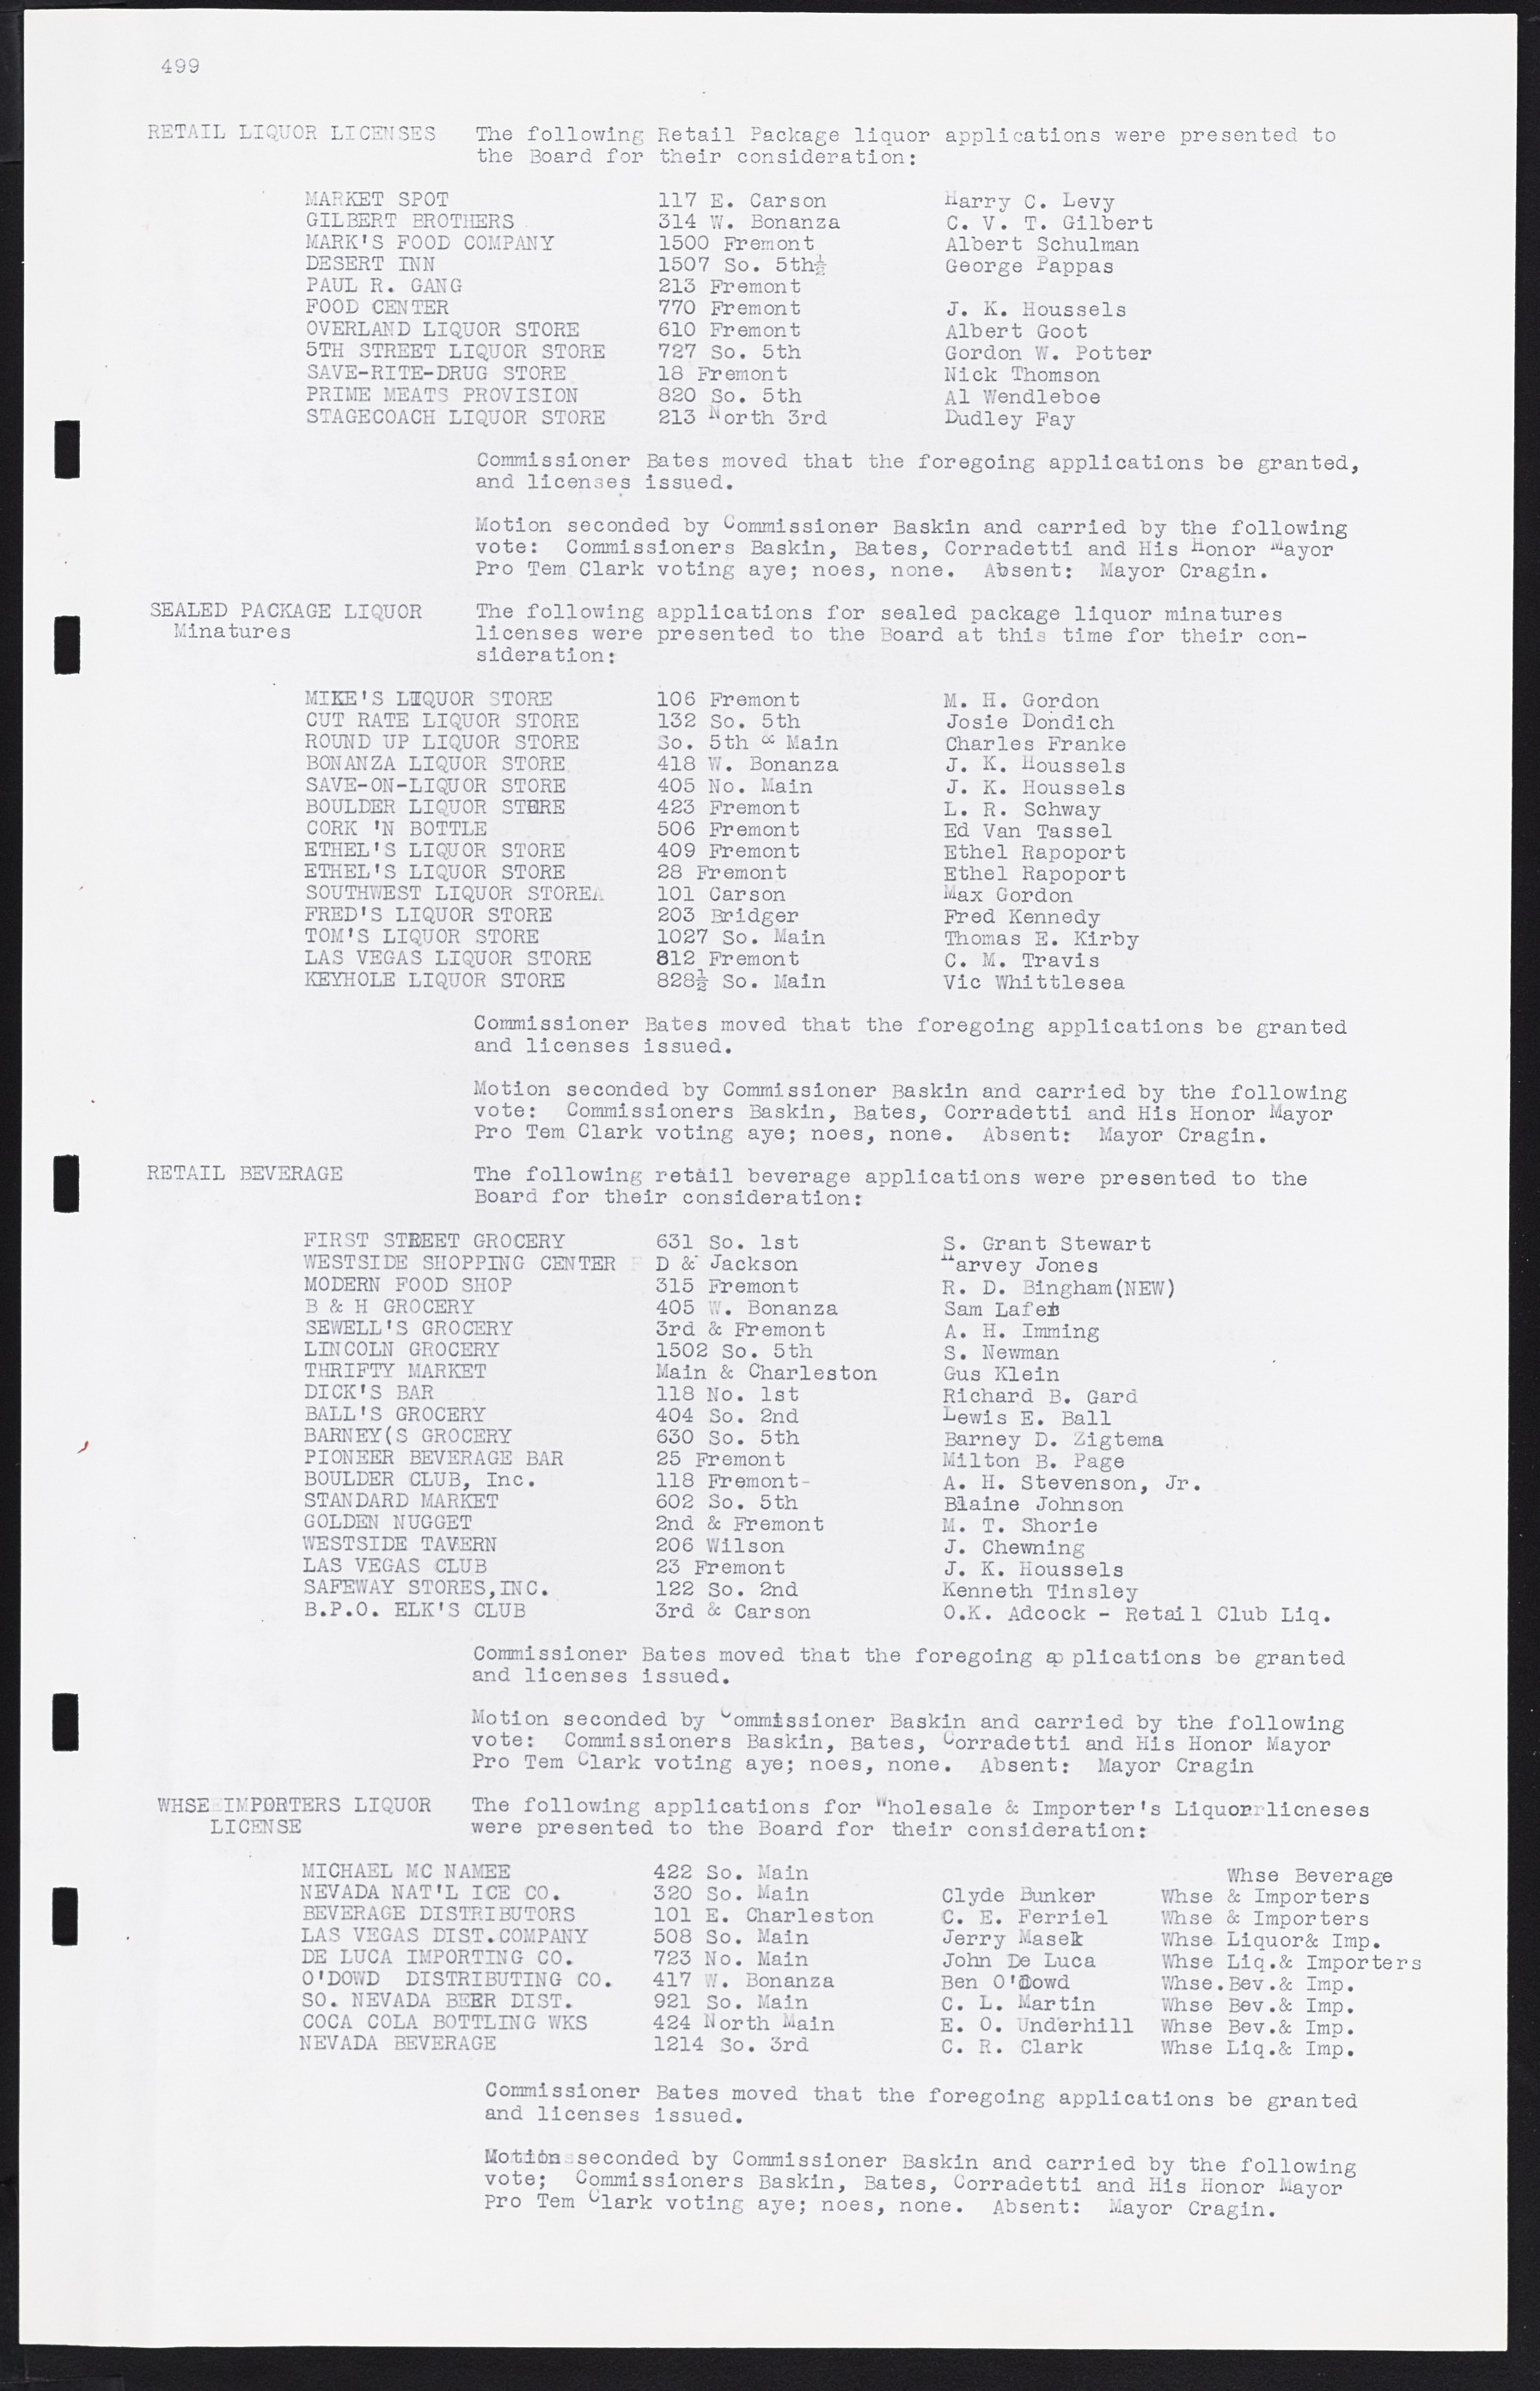 Las Vegas City Commission Minutes, August 11, 1942 to December 30, 1946, lvc000005-530